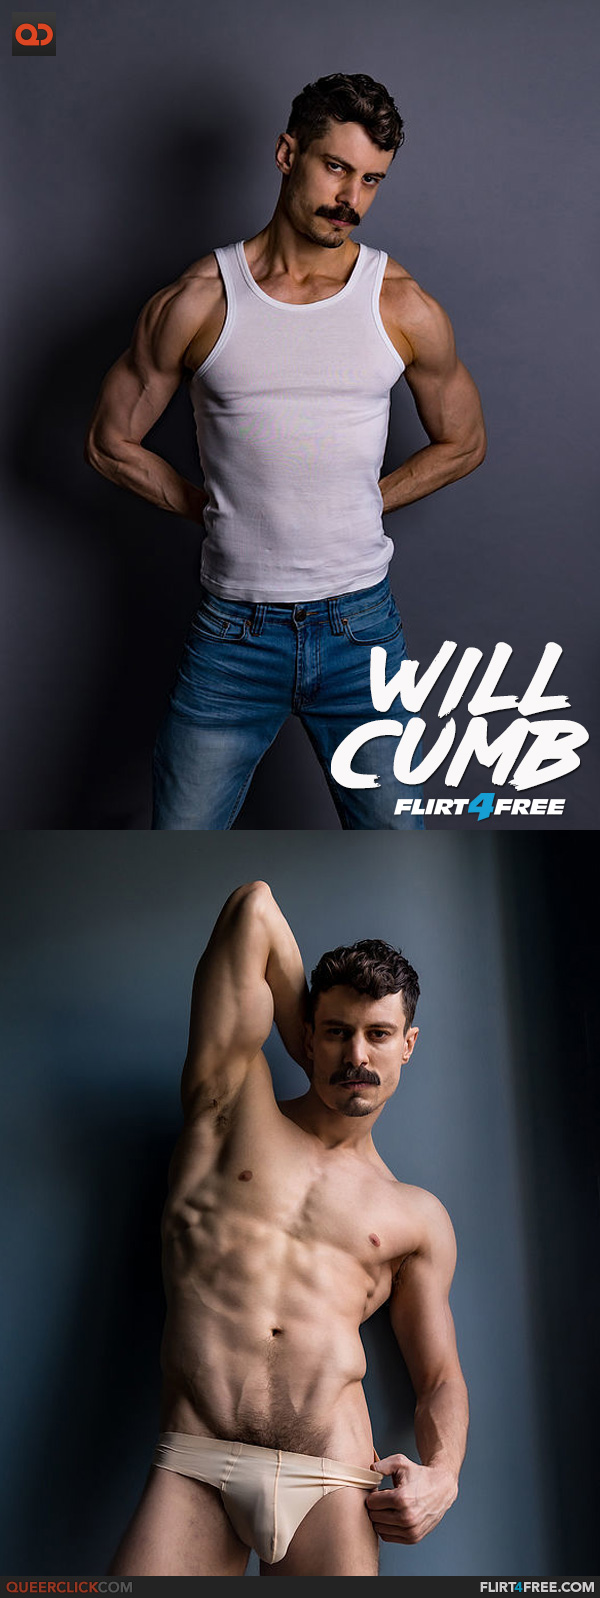 Flirt4Free: Will Cumb